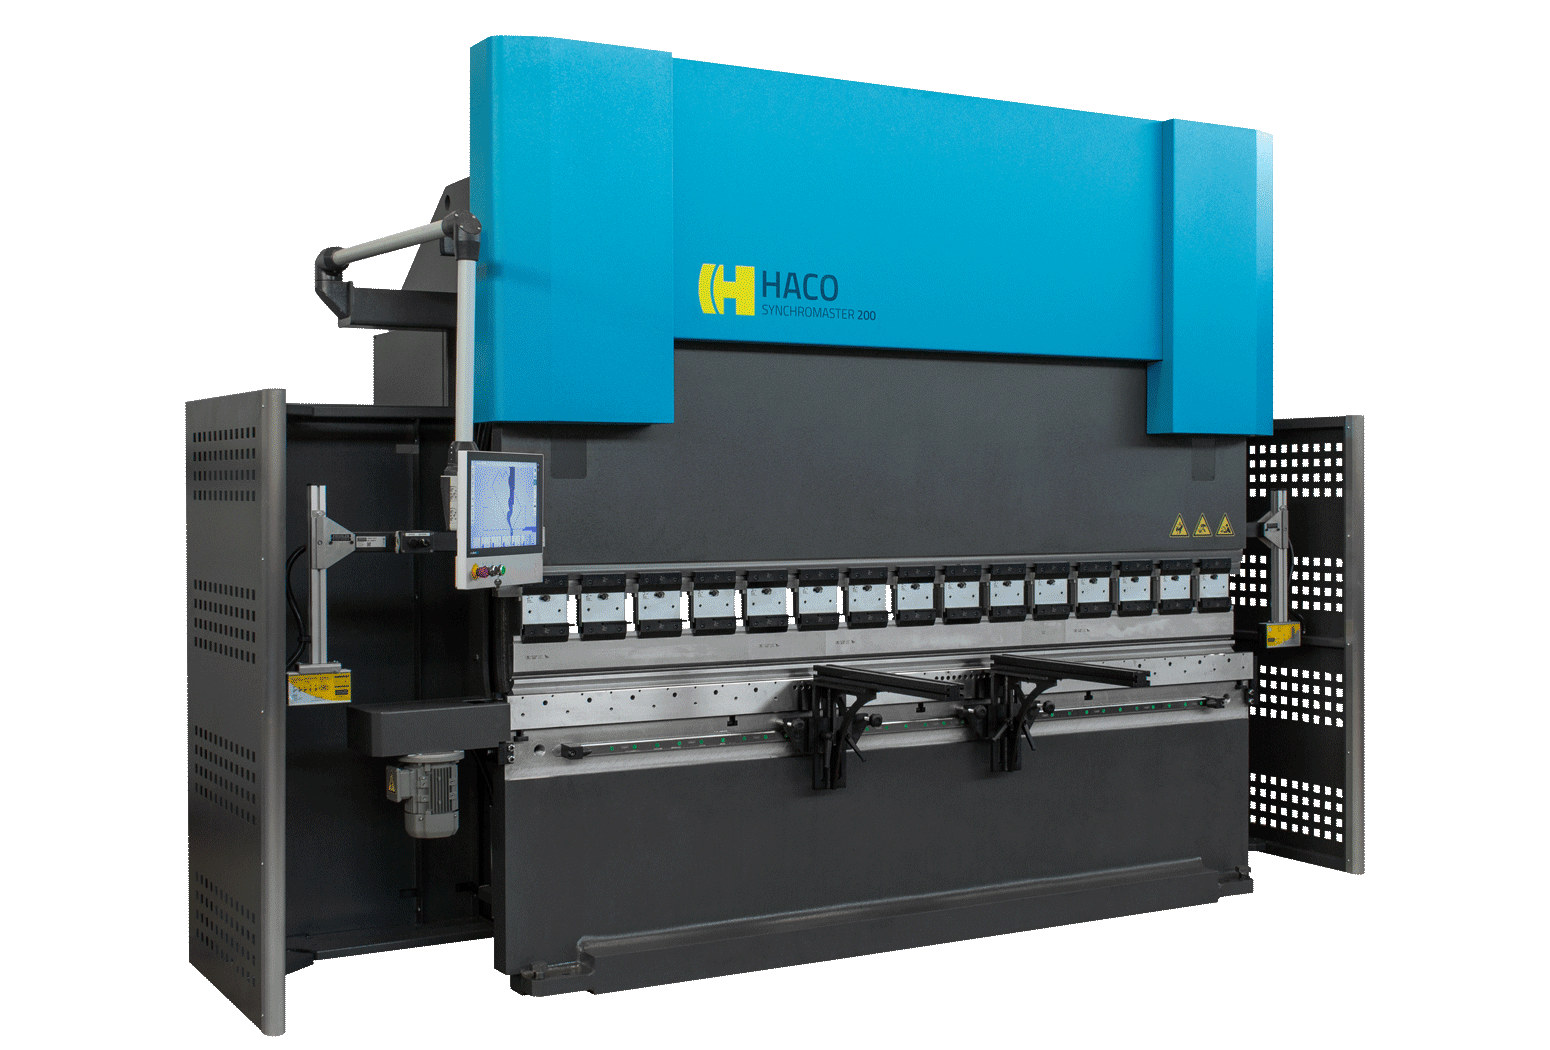 HACO Blechbearbeitungsmaschinen wie Tafelscheren, Abkantpressen oder Laserschneidanlagen für ein großes Spektrum an Anwendungen